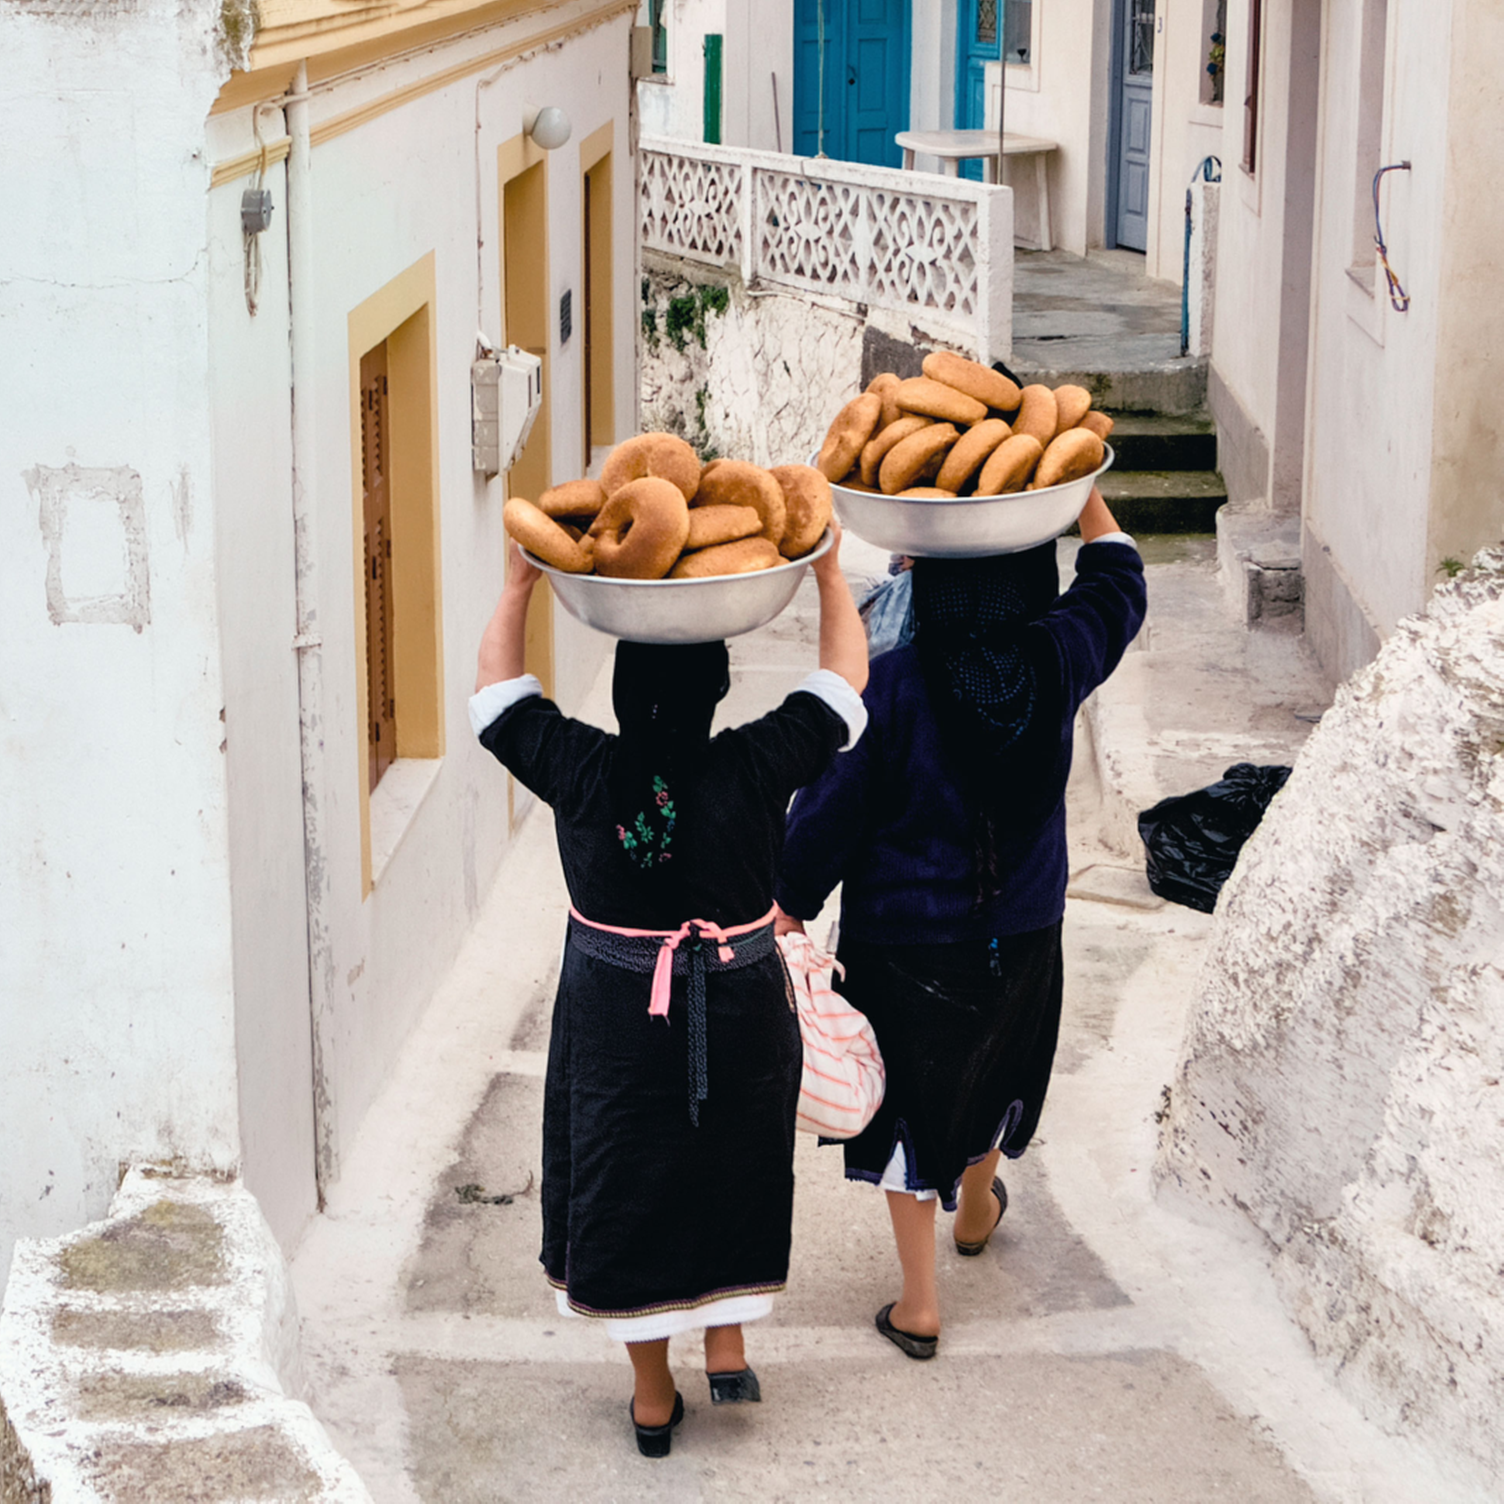 Donne camminano portando sulla testa cesti di pane per la vigilia di Pasqua